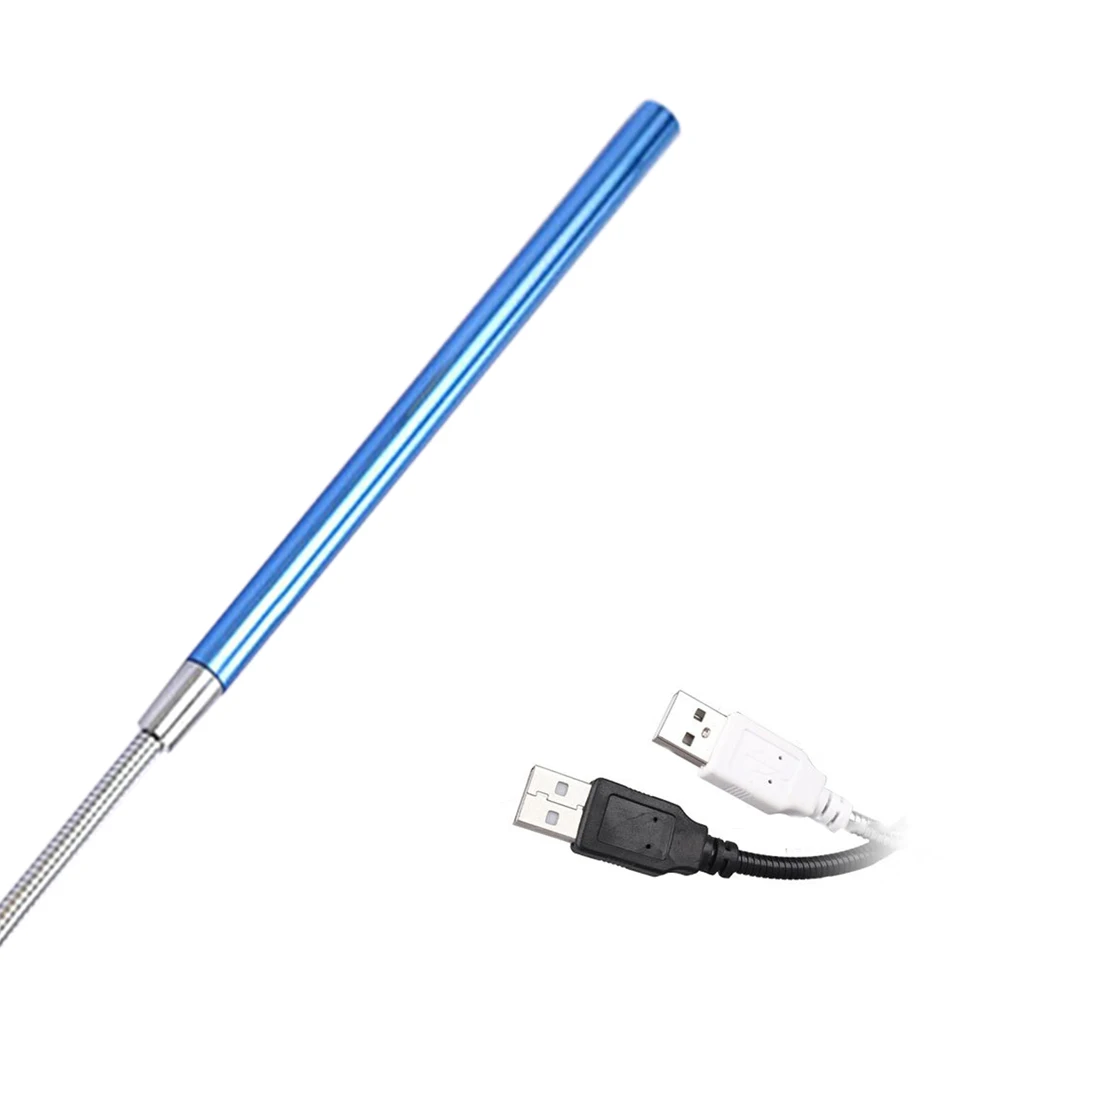 USB СВЕТОДИОДНЫЙ светильник 10 светодиодный s светильник для чтения книг гибкий ультра яркий ночной Светильник для ноутбука ПК компьютера - Испускаемый цвет: Blue